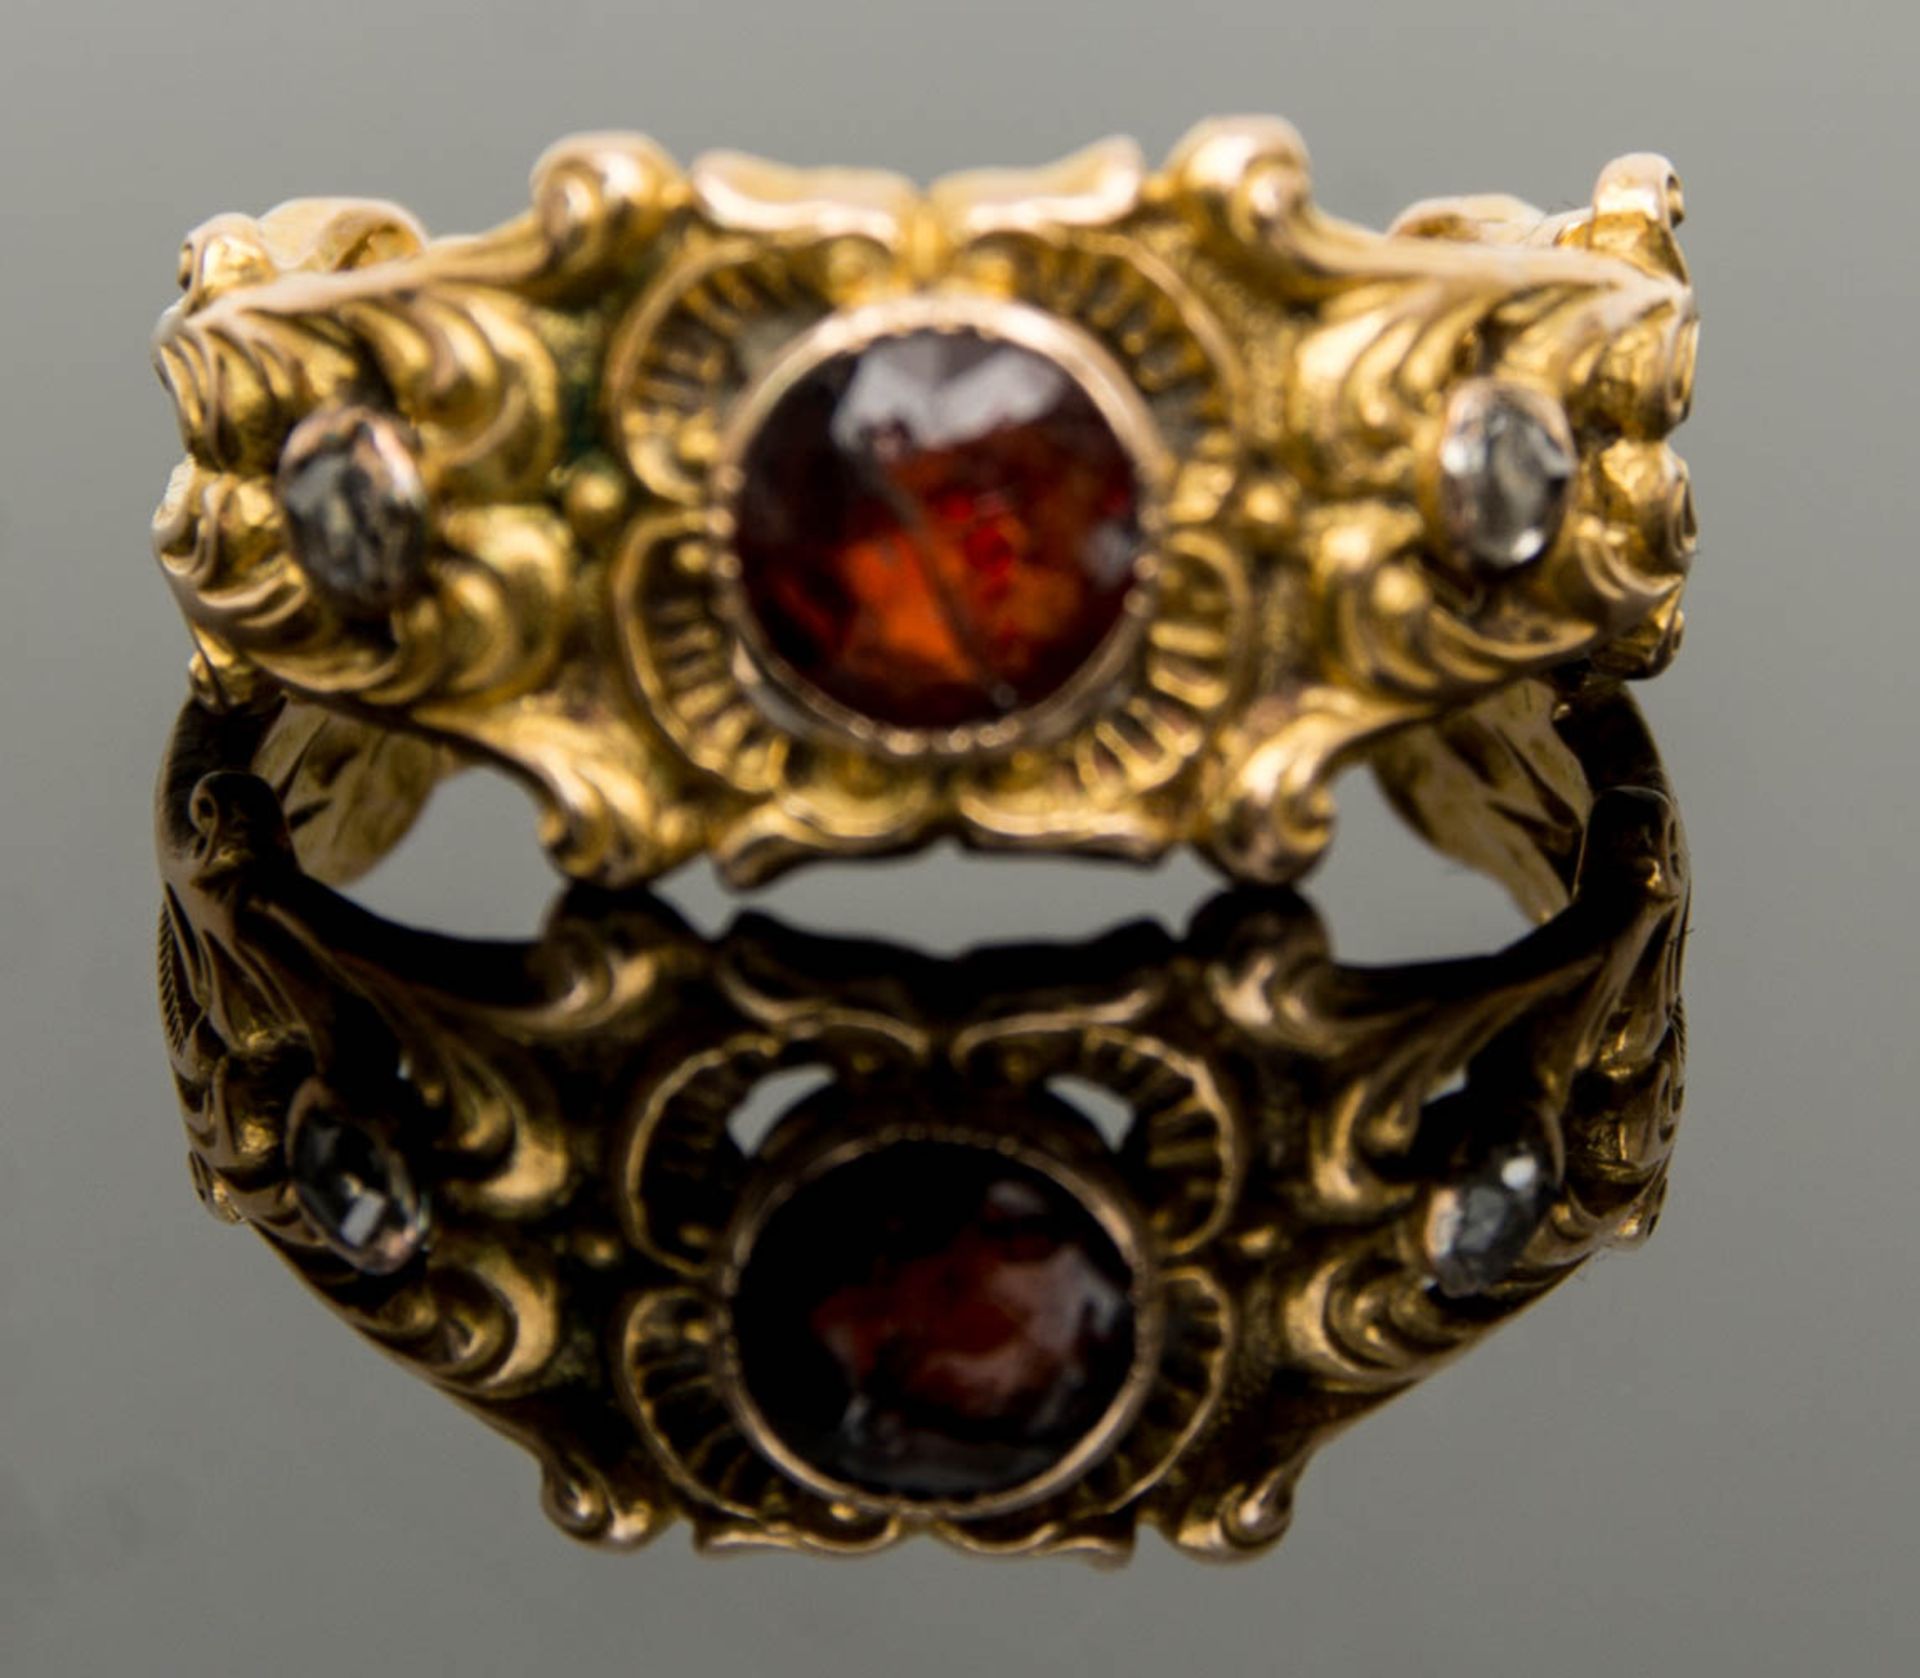 Antiker Ring mit Rhodolit und Brillantsplitter.Gesamtgewicht: 4,1g.750er Gelbgold. - Image 2 of 3